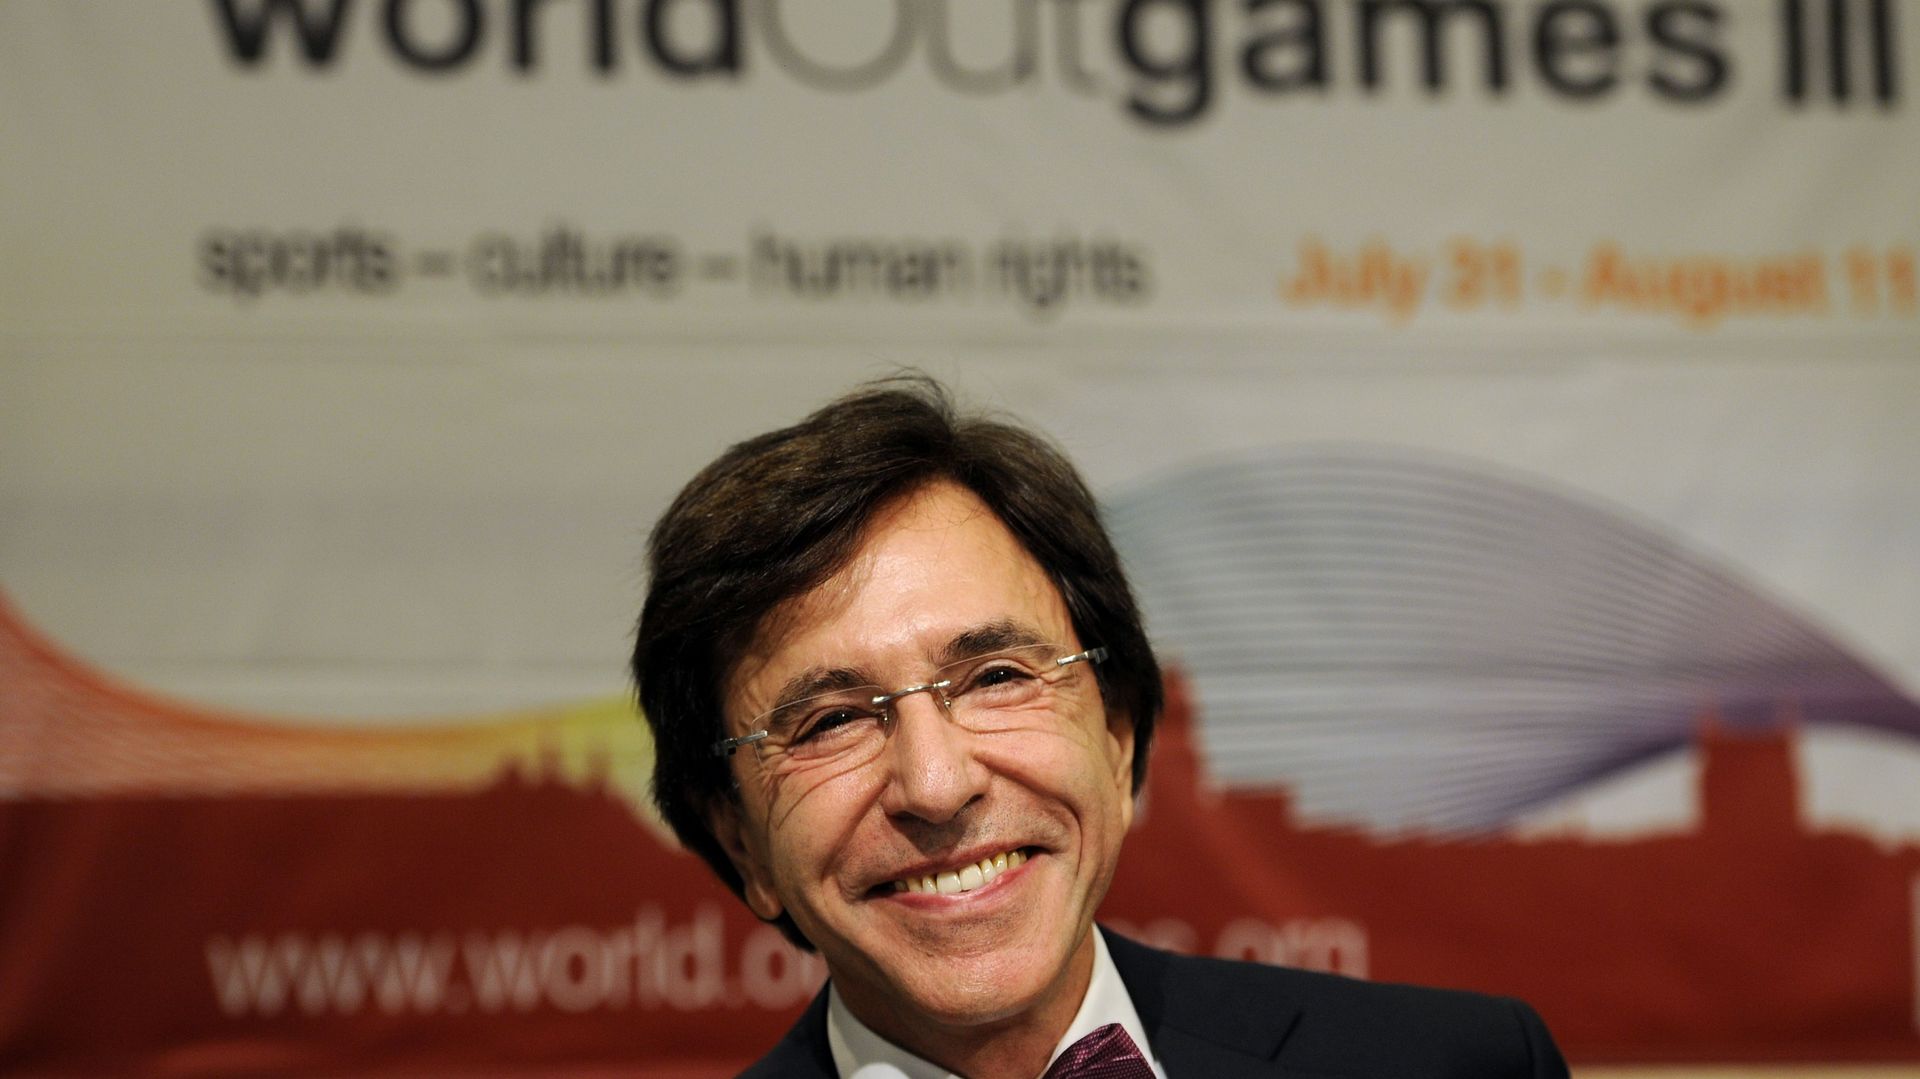 Elio Di Rupo à la conférence de presse de présentation des worldOutgames